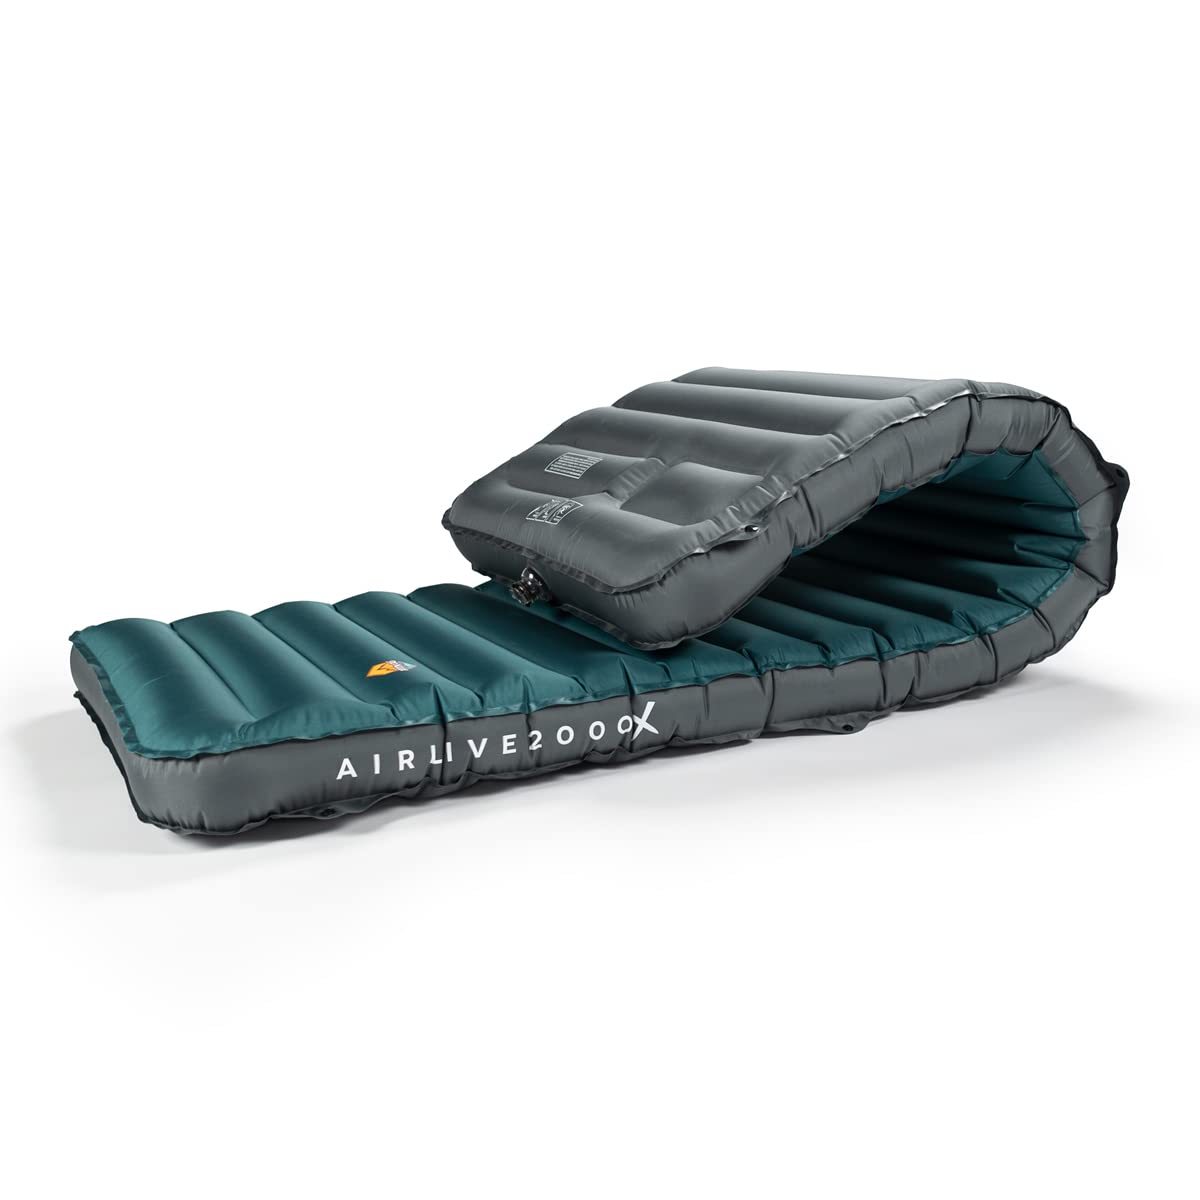 送料無料ZOOOBELIVES 3D Wrapping Inflatable Camping Sleeping Pad with Built-in Pump Extra Thick and Wide Ultimate Comfor